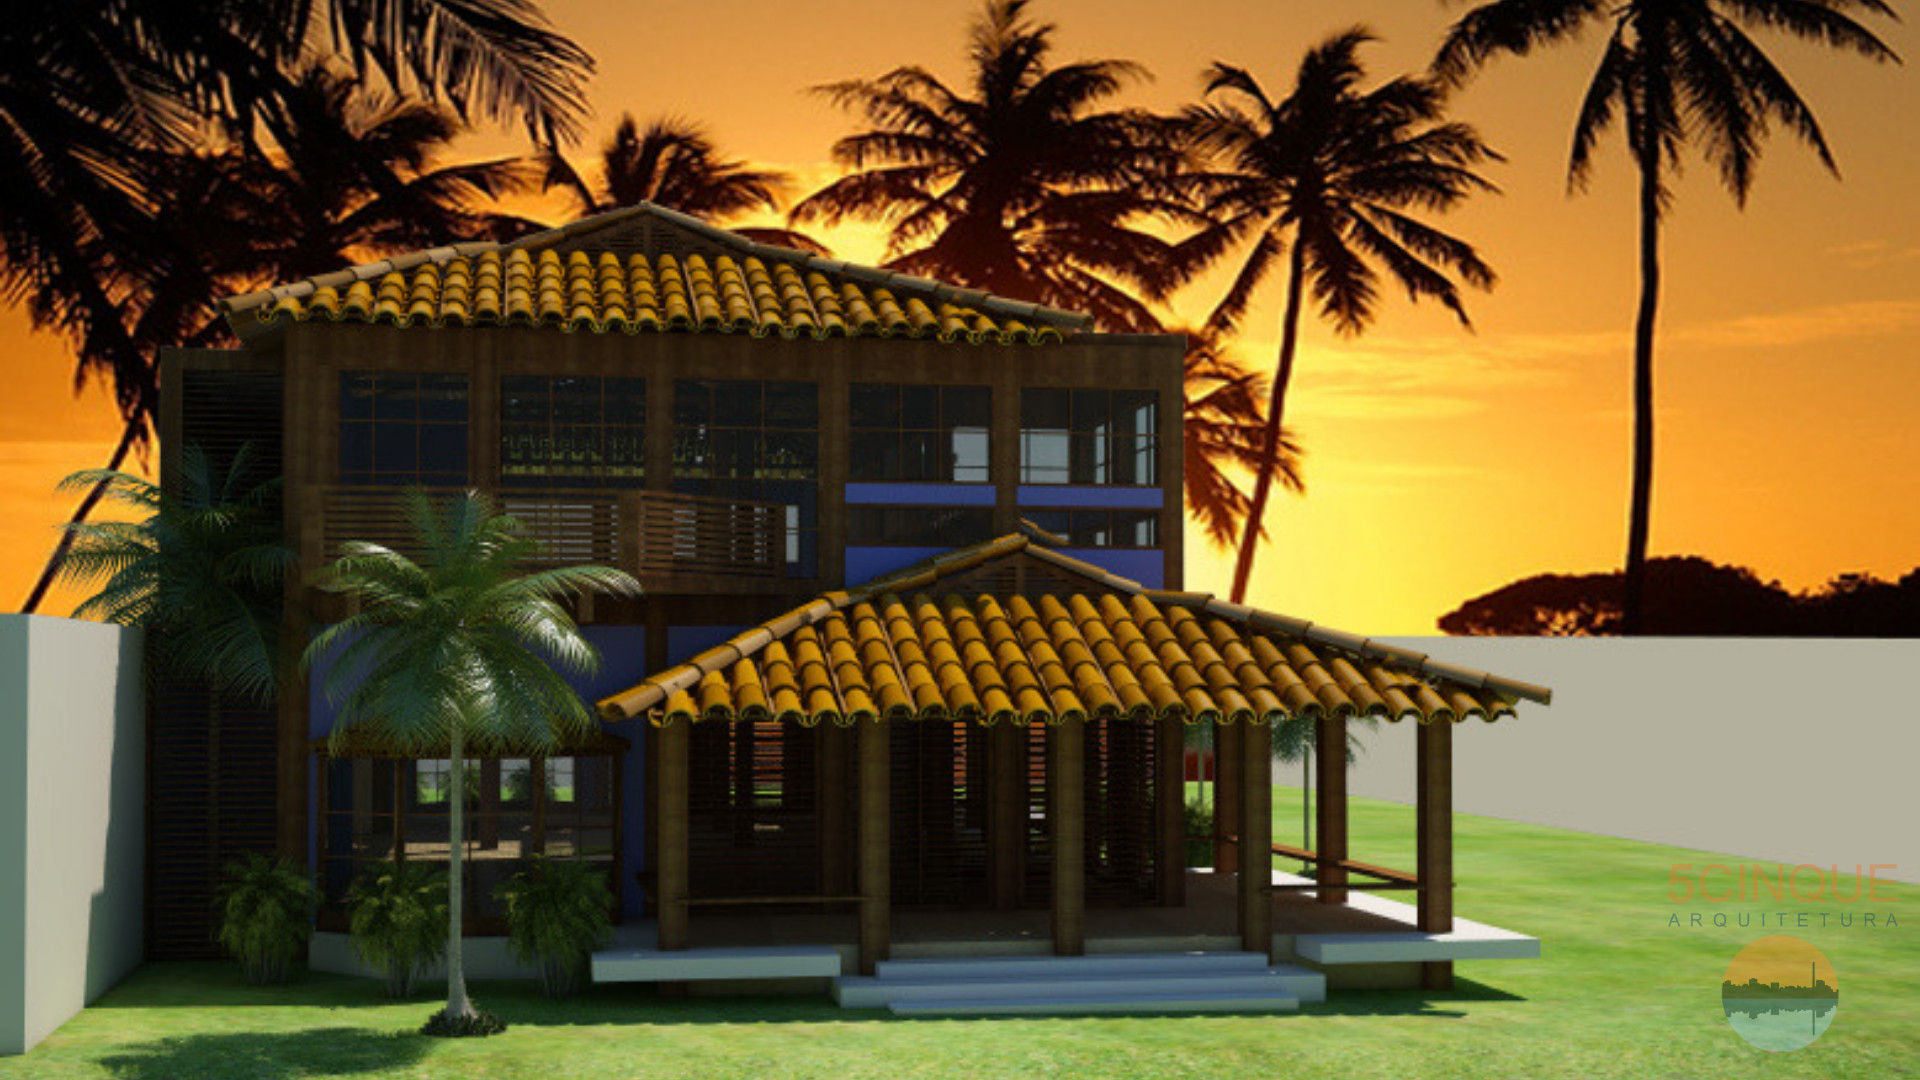 Casa de Praia com Iluminação Natural, 5CINQUE ARQUITETURA LTDA 5CINQUE ARQUITETURA LTDA Tropische huizen